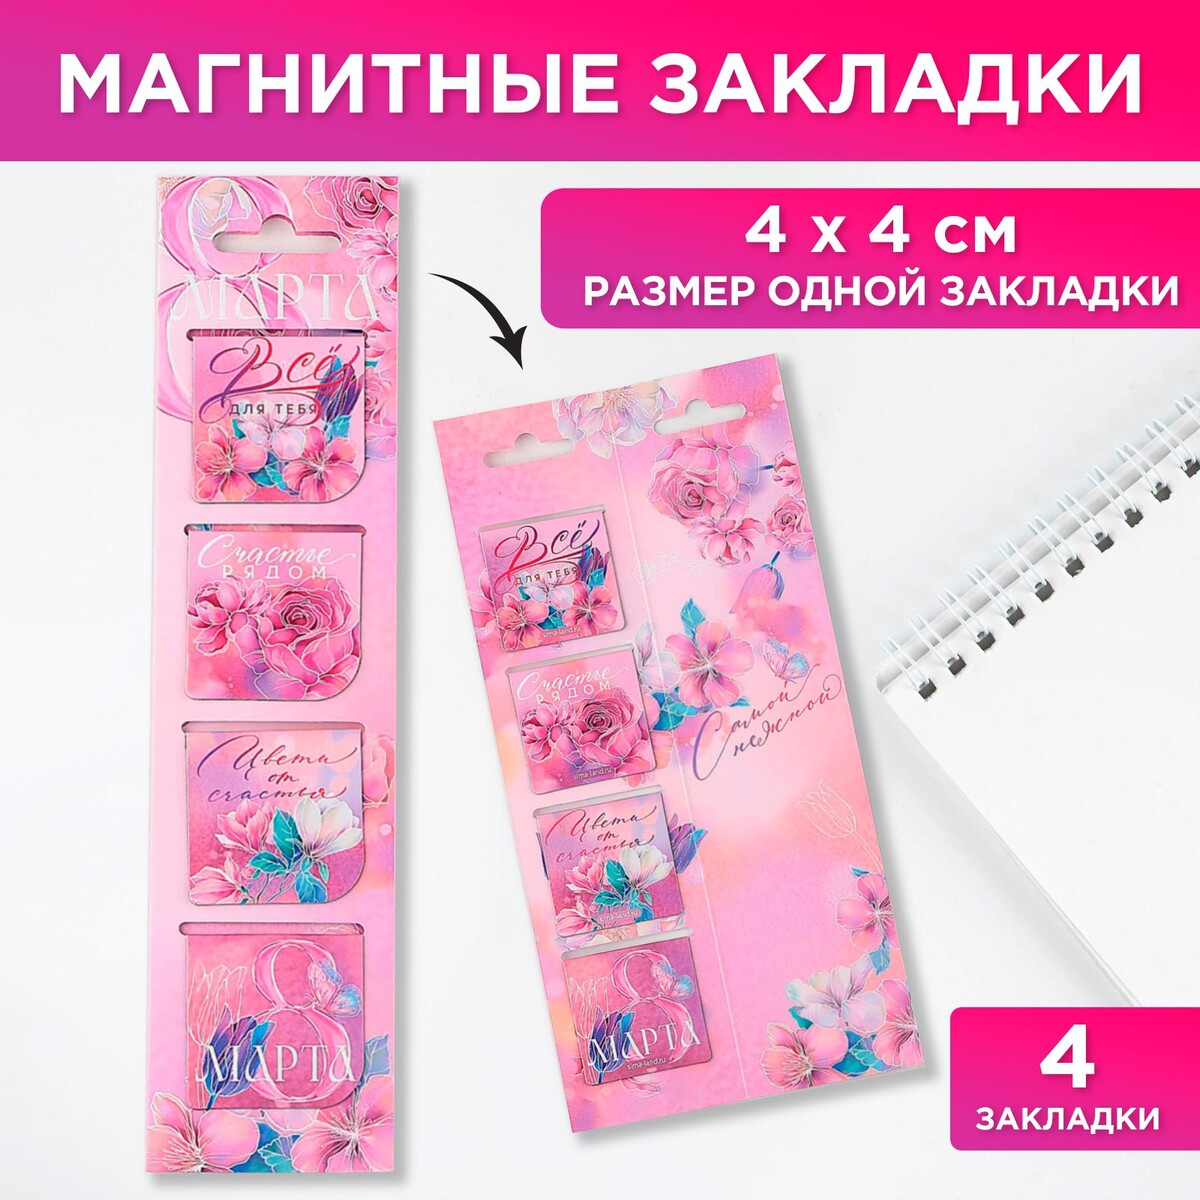 Магнитные закладки 4 шт в открытке закладки магнитные для книг на открытке самой сказочной девочке принцессы